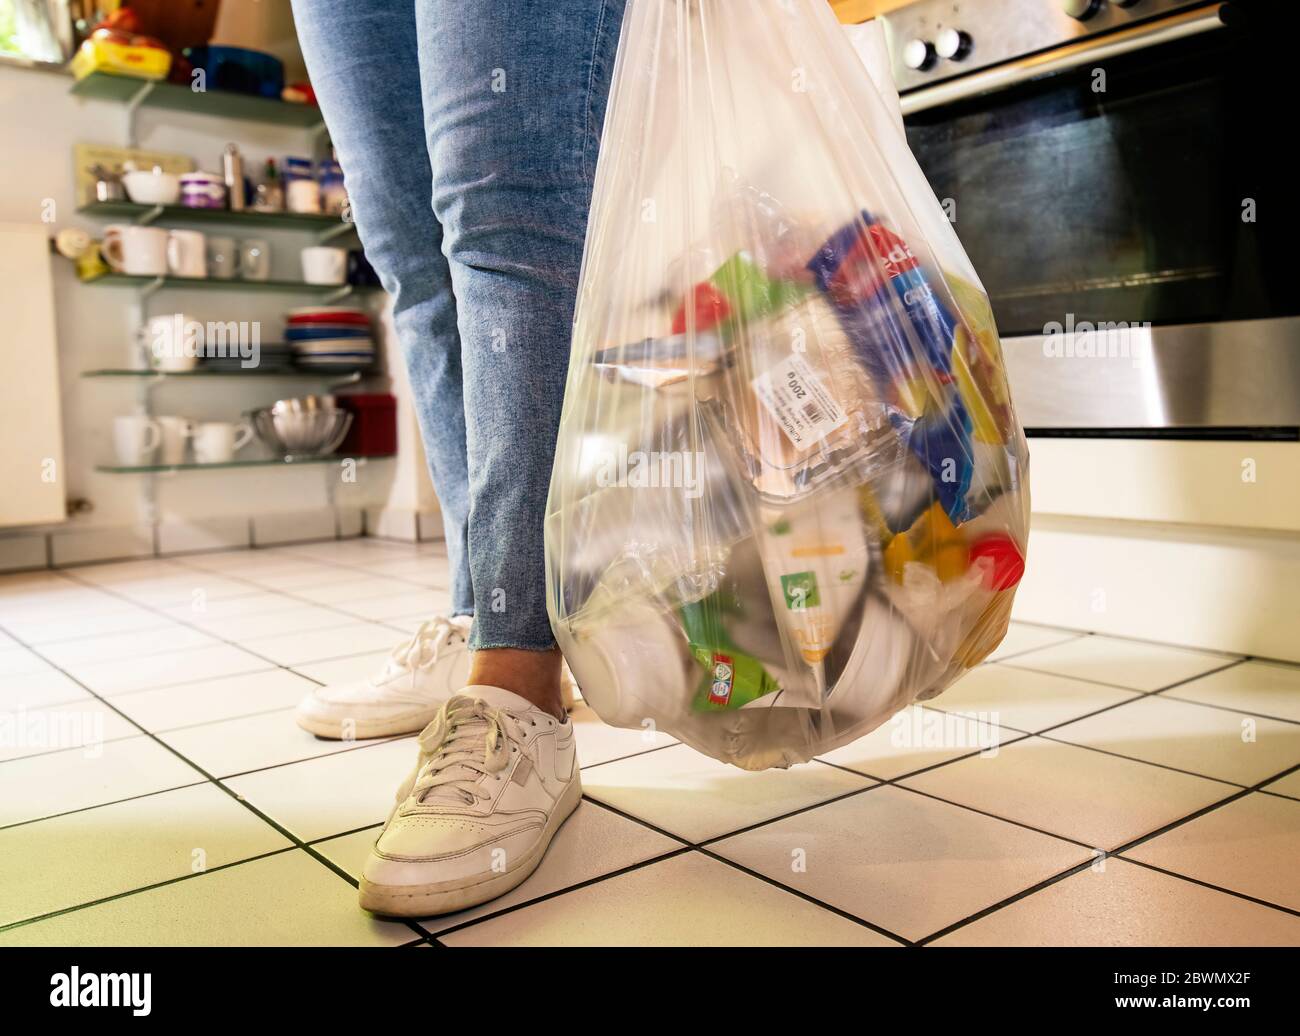 Femme debout dans une cuisine transportant un sac en plastique avec des déchets en plastique Banque D'Images